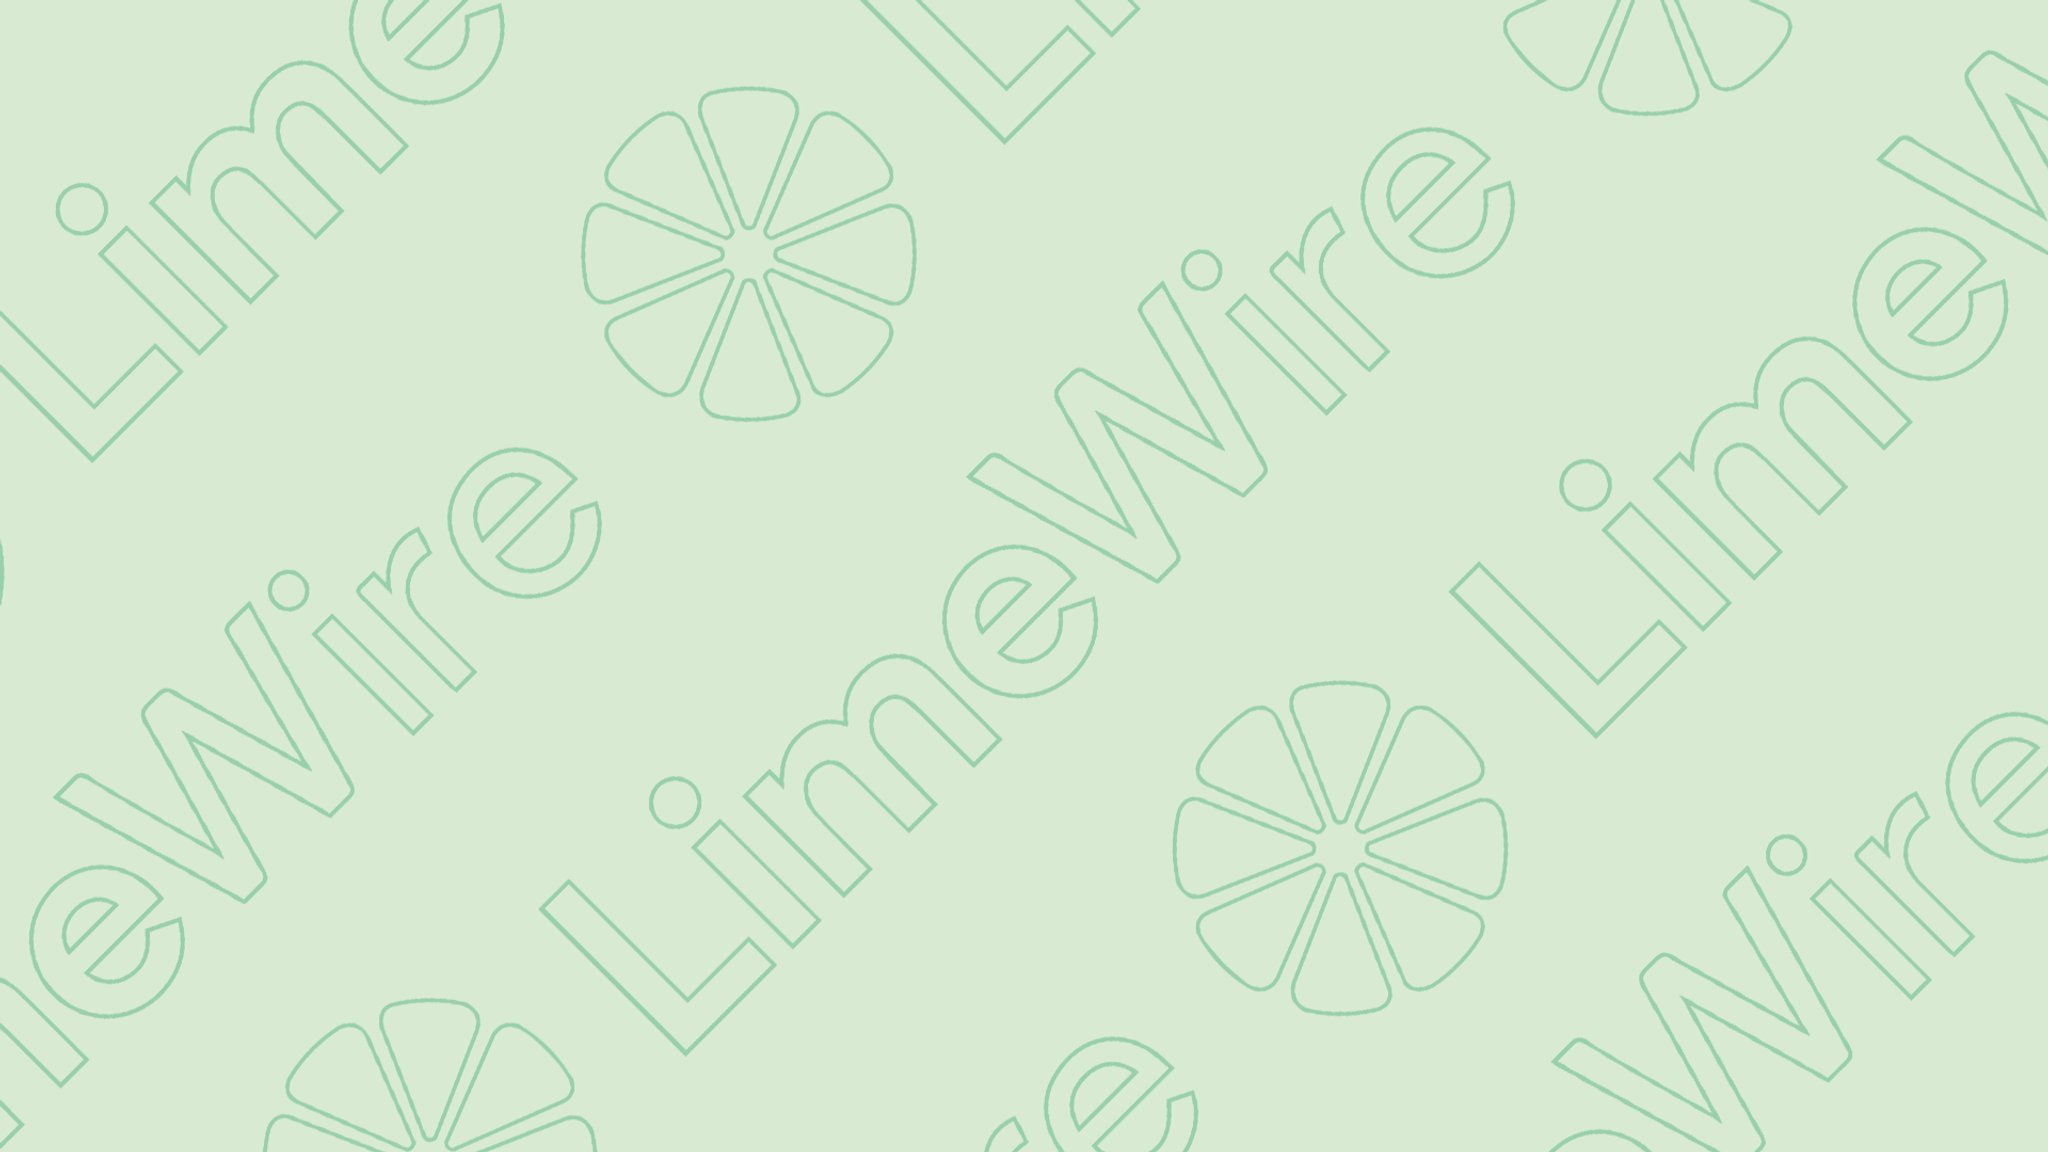 Limewire: legal peer-to-peer sharing in Web3